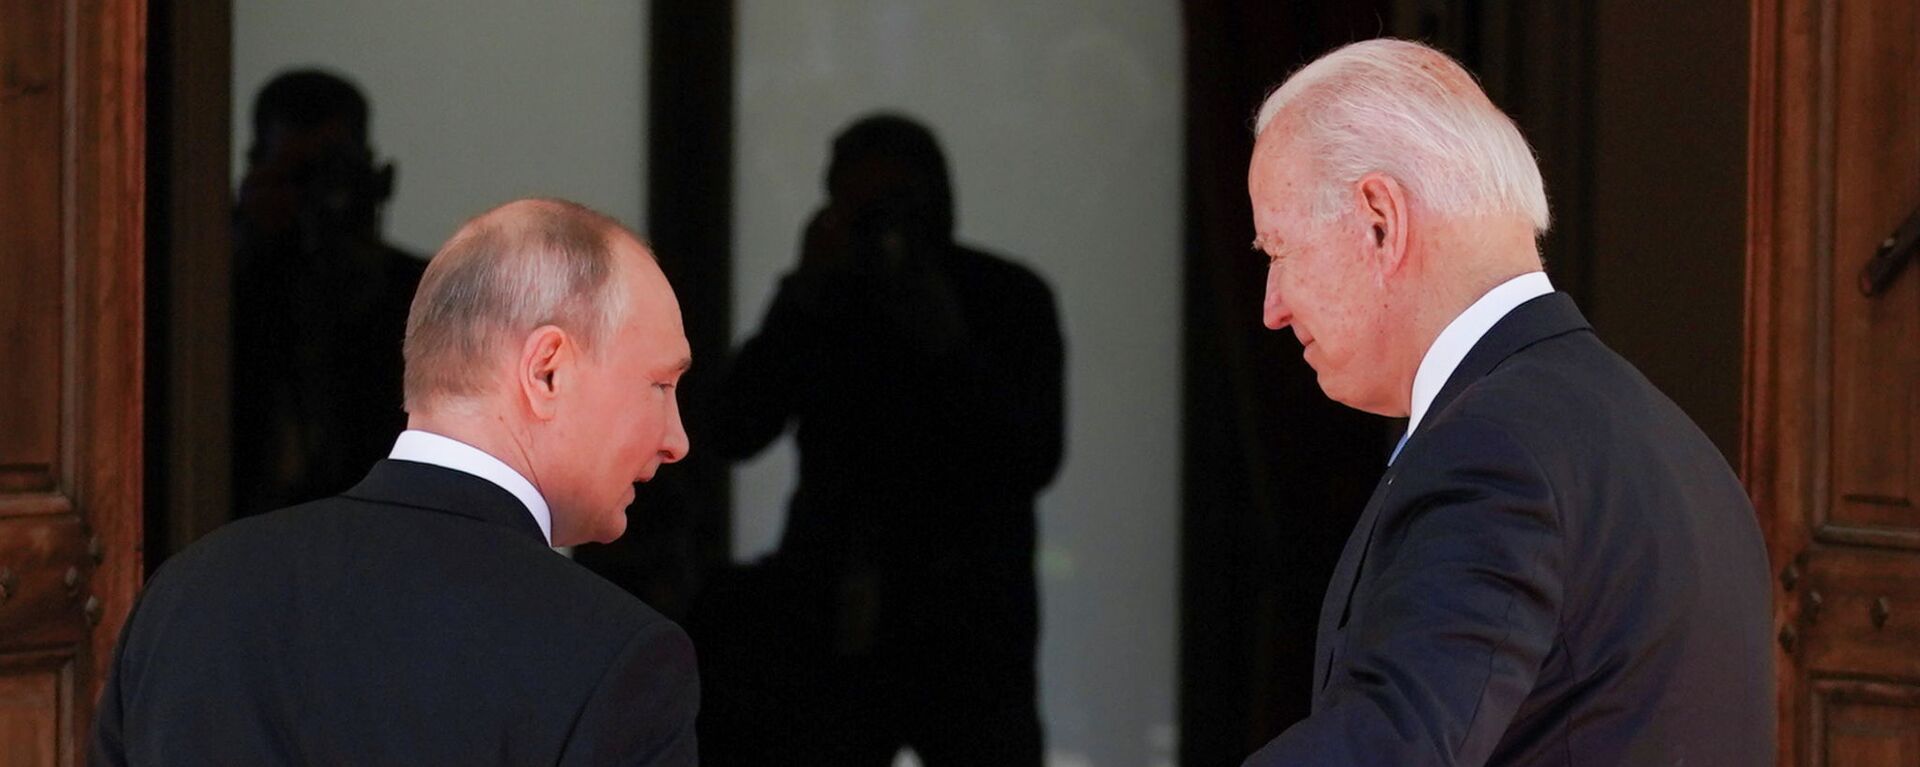 Президент США Джо Байден и президент России Владимир Путин встречаются на саммите США и России на вилле La Grange в Женеве, Швейцария. 16 июня 2021 года - Sputnik Кыргызстан, 1920, 16.06.2021